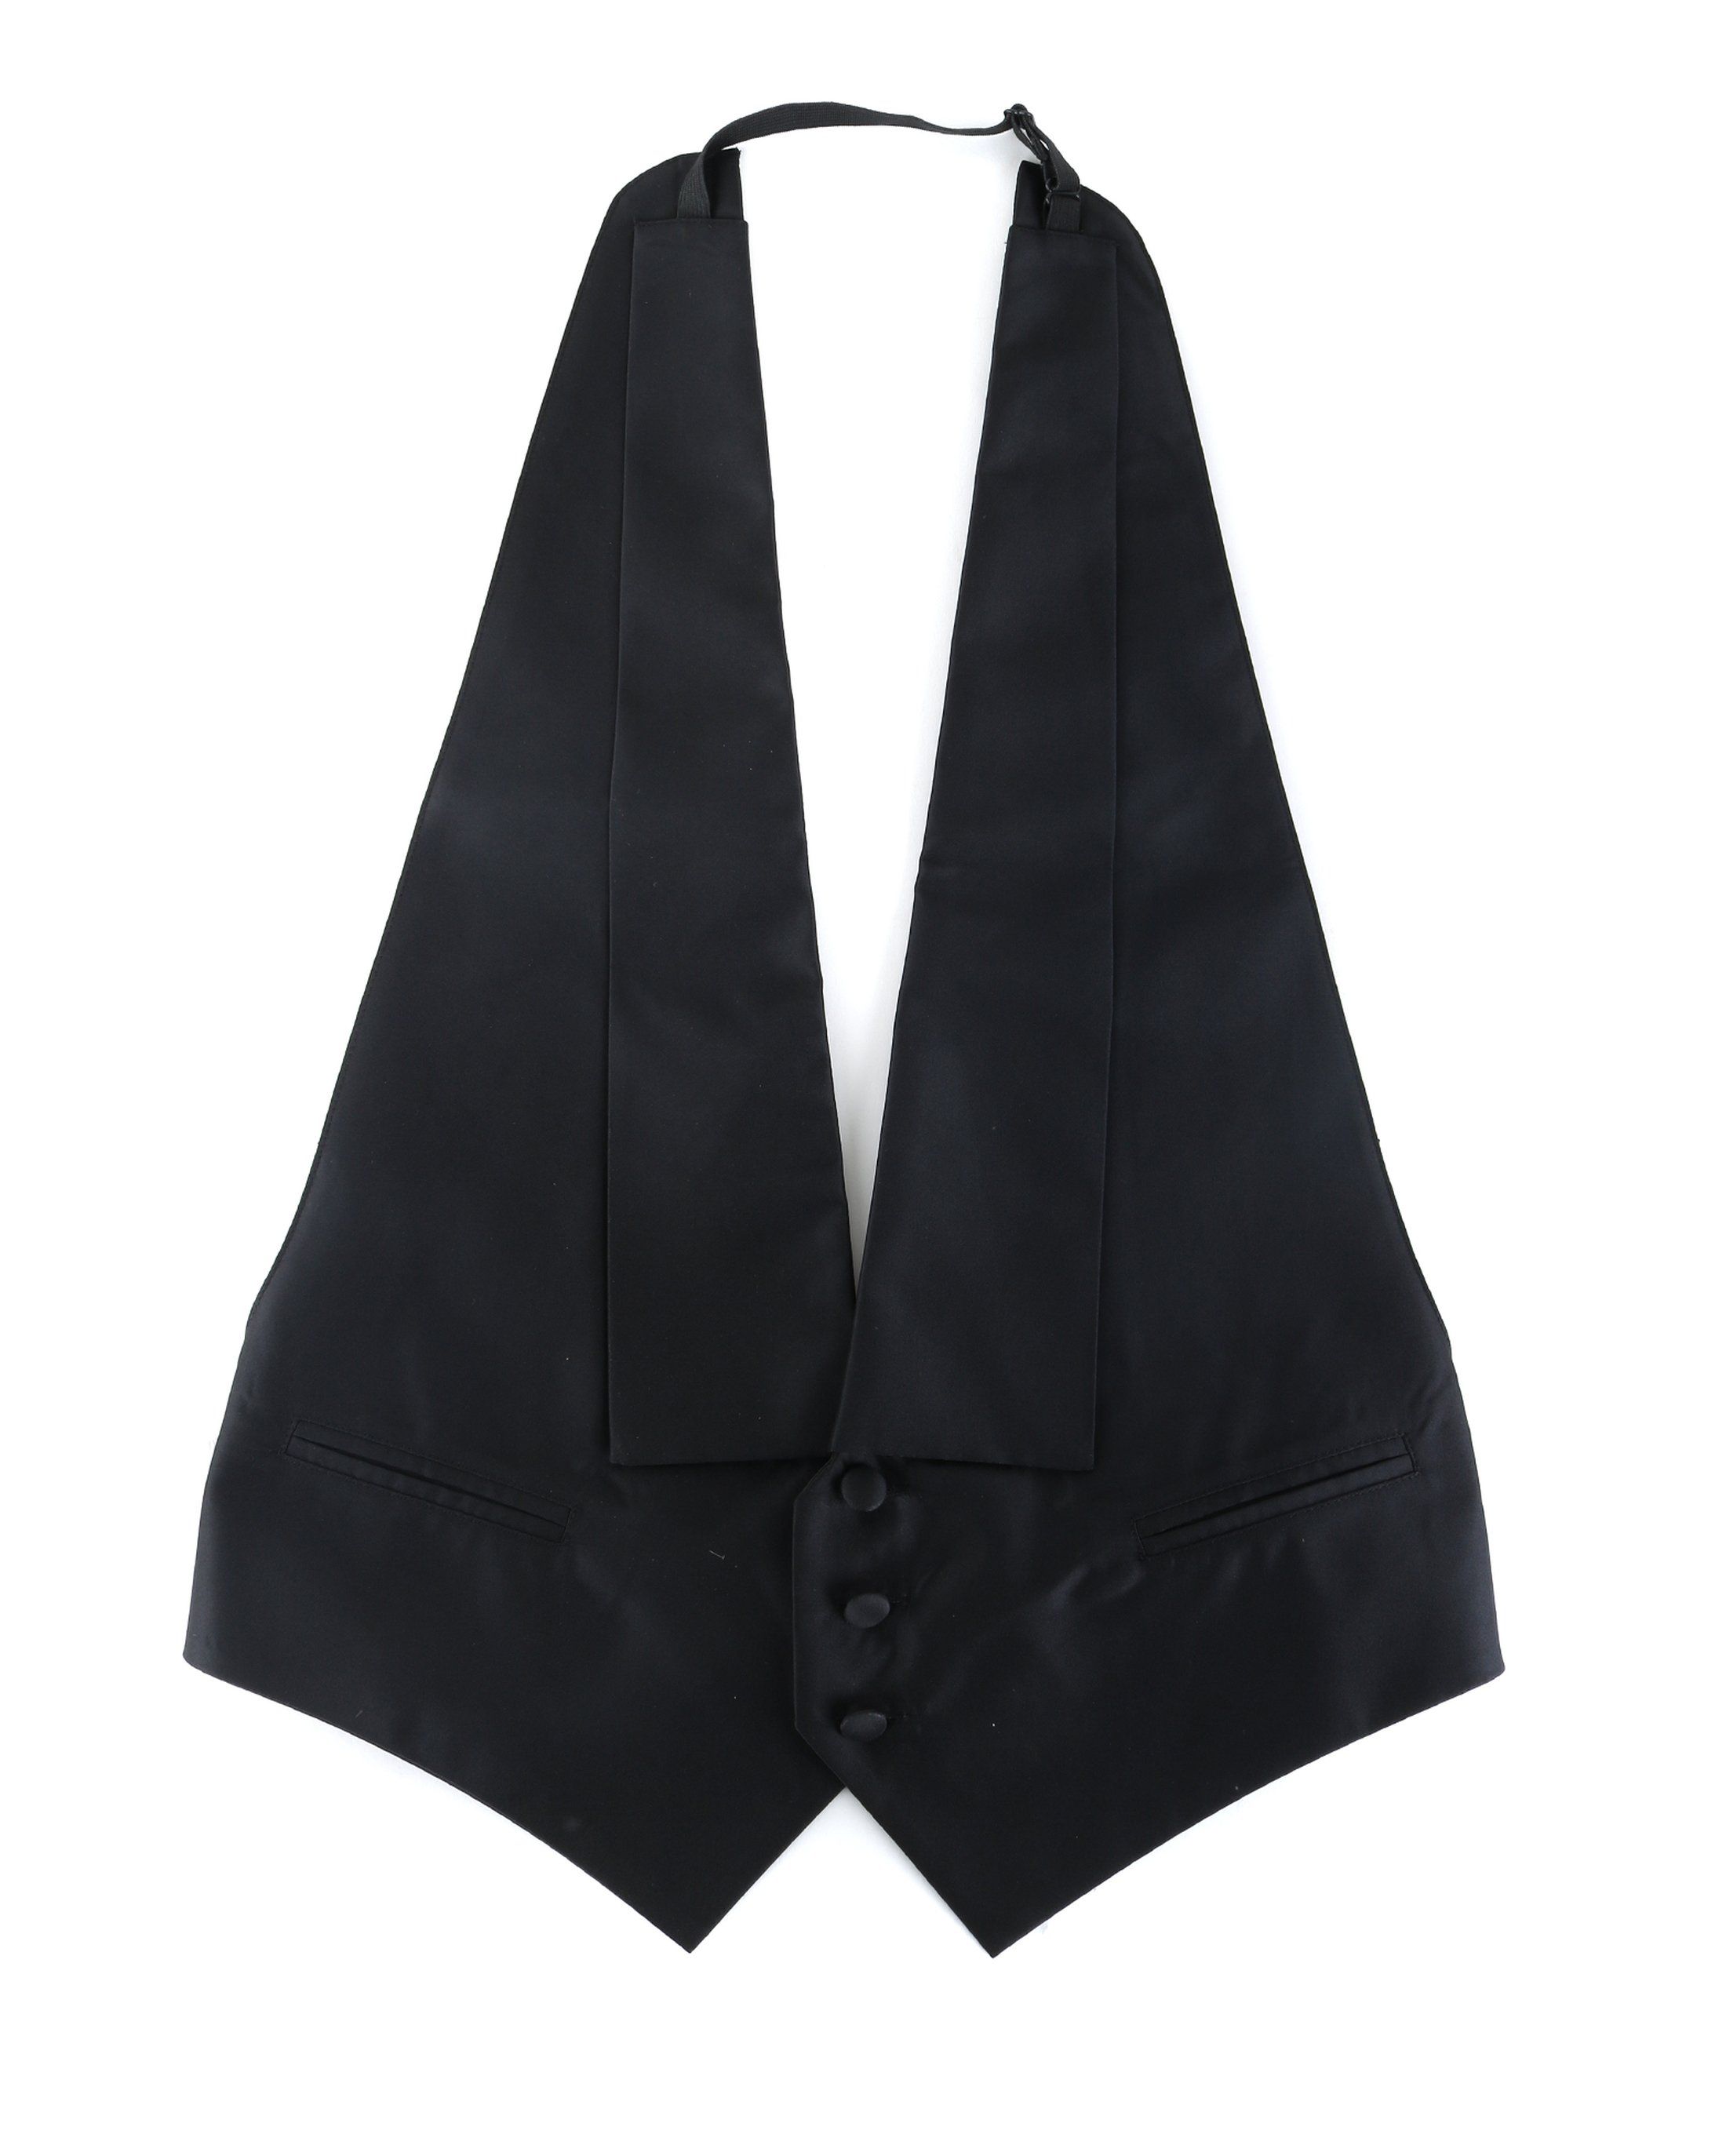 Tailcoat Waistcoat Black size L